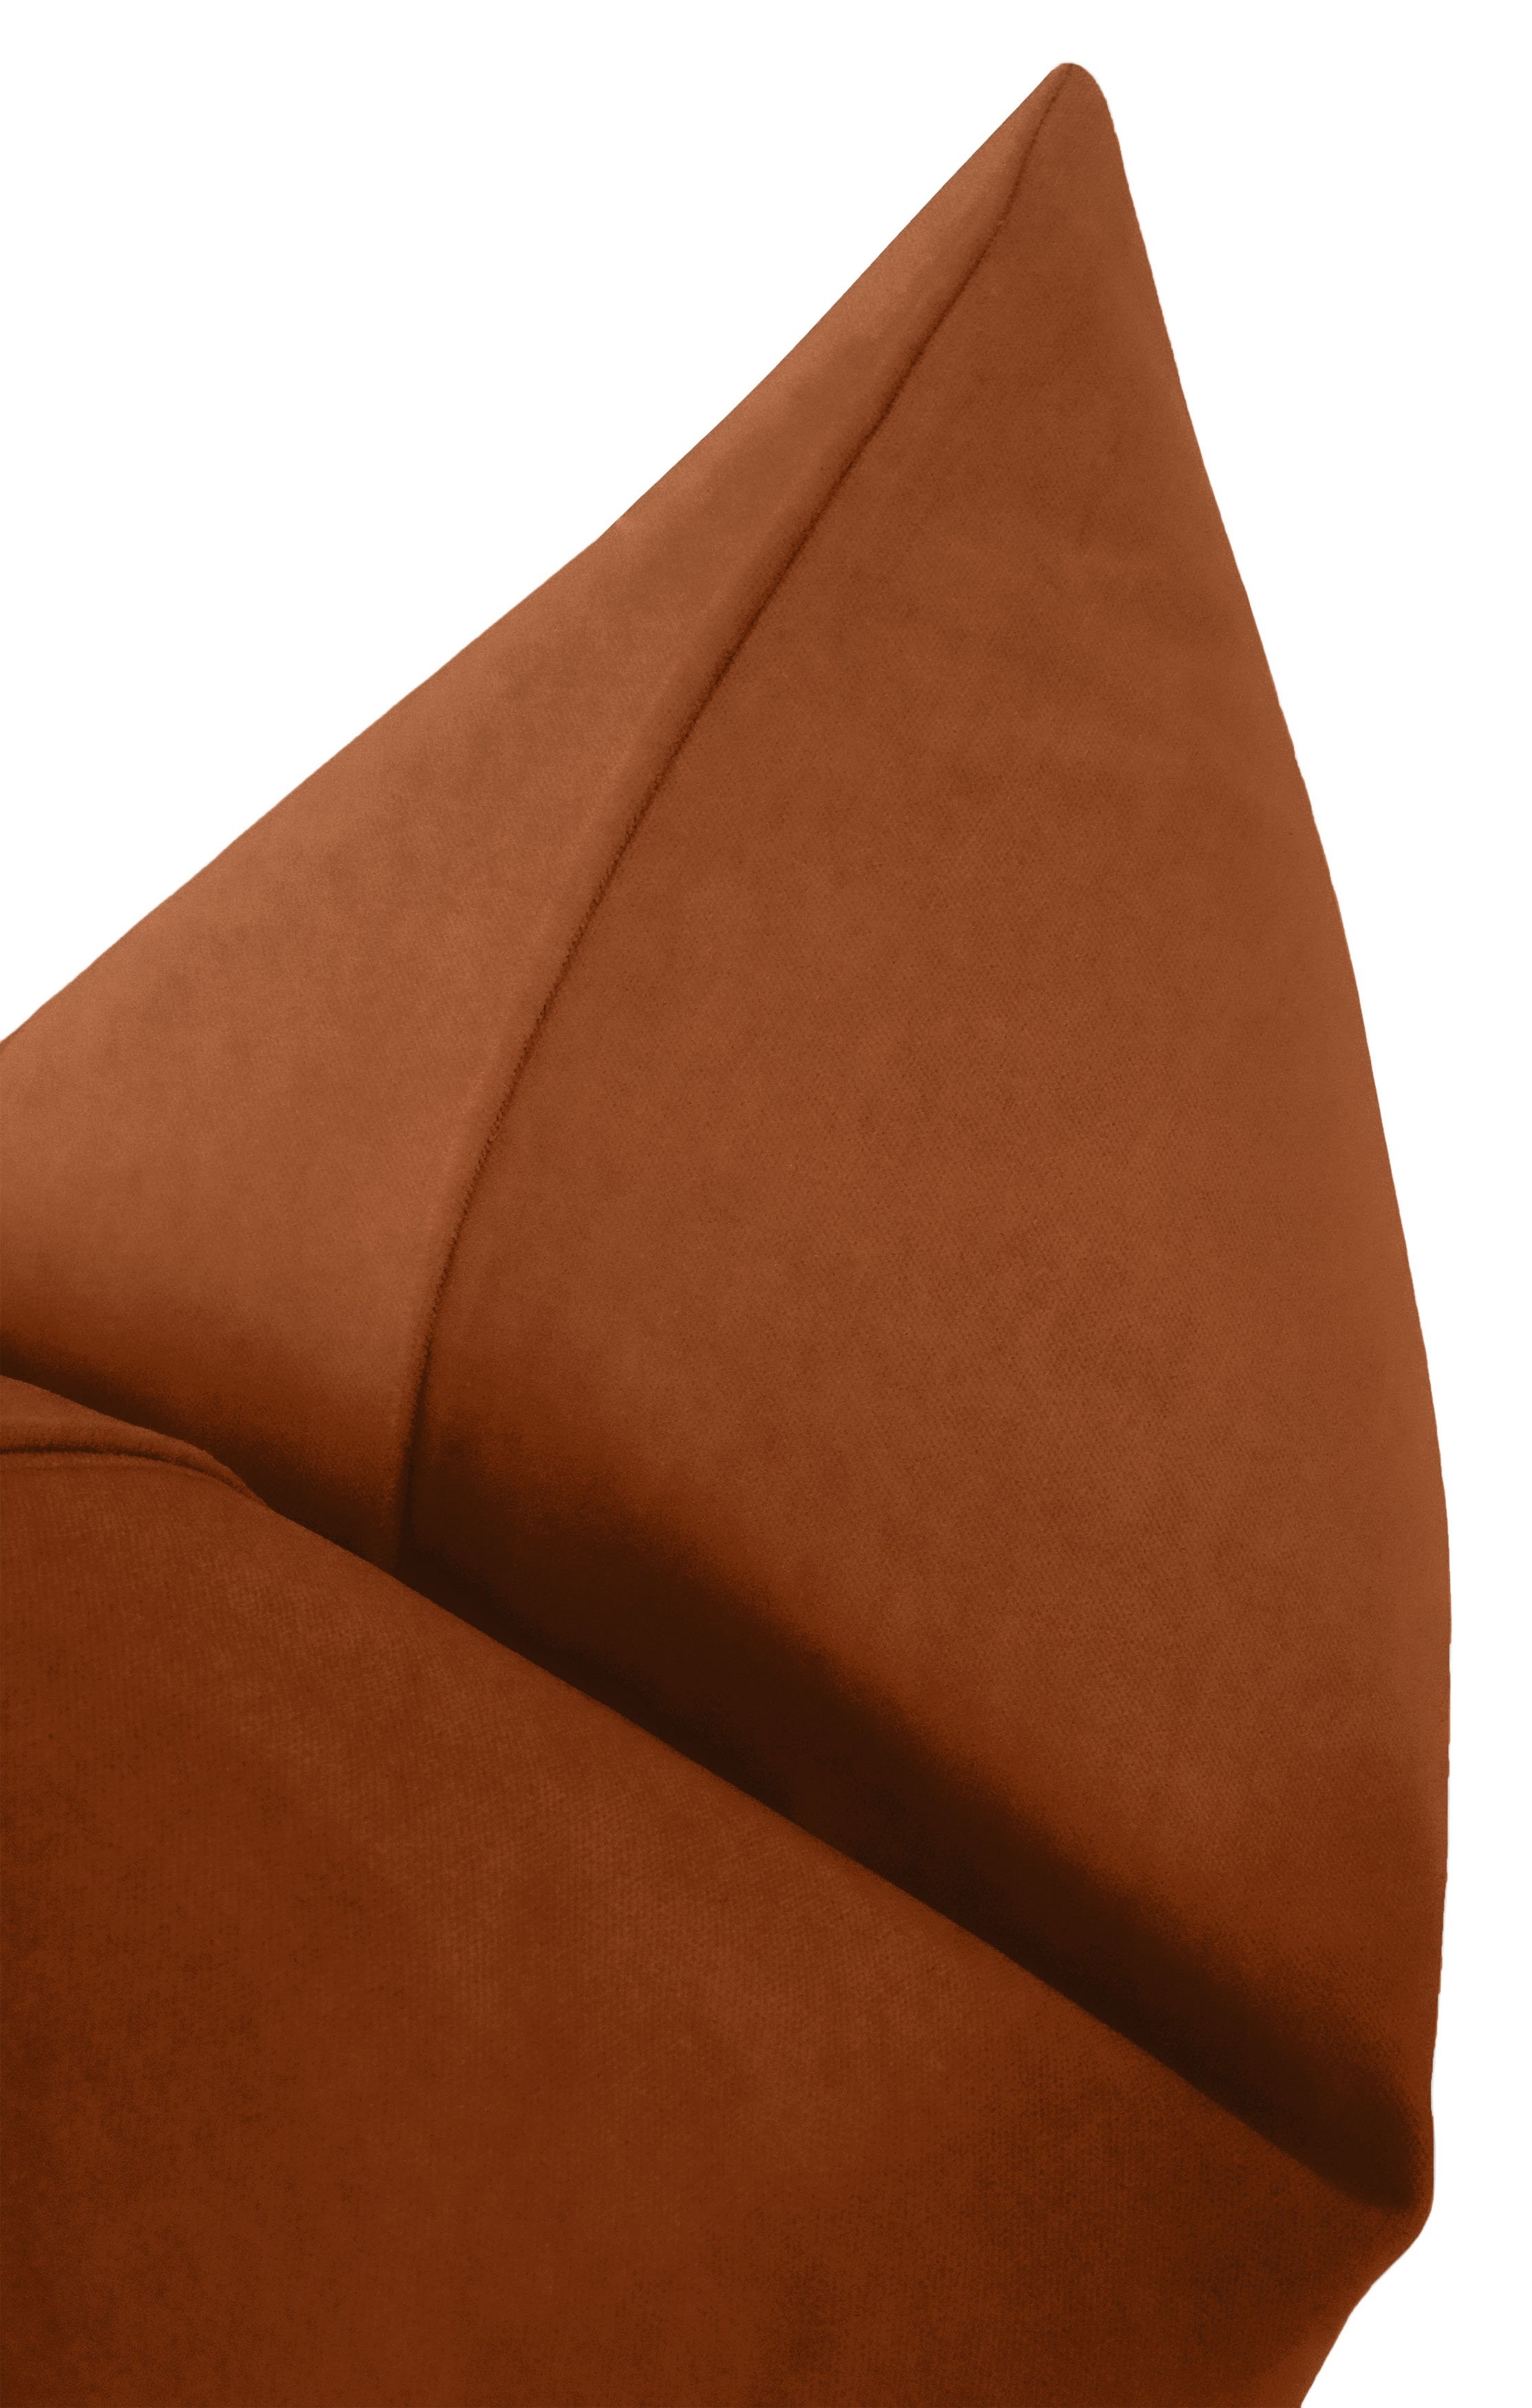 Classic Velvet Pillow Cover, Terracotta, 20" x 20" - Image 2